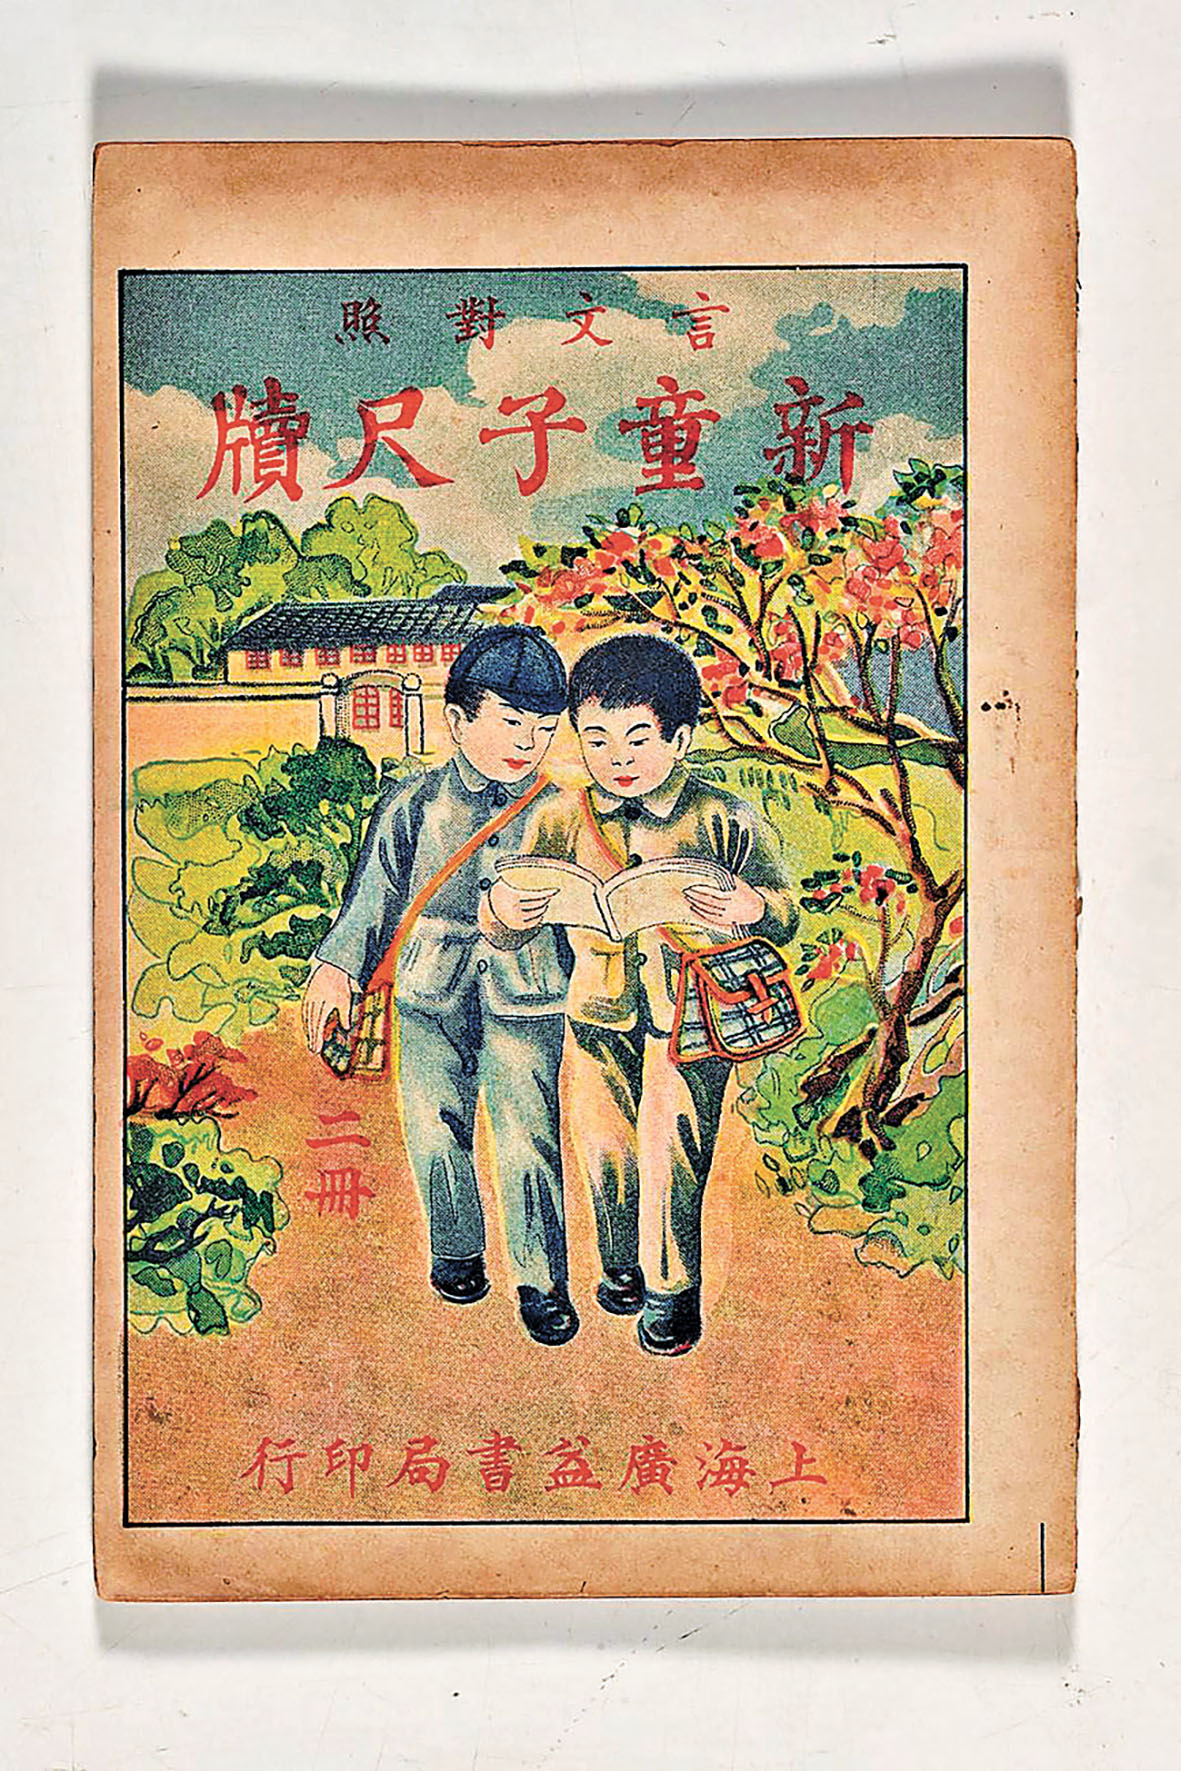 ■1932年上海廣益書局印行的《新童子尺牘》。